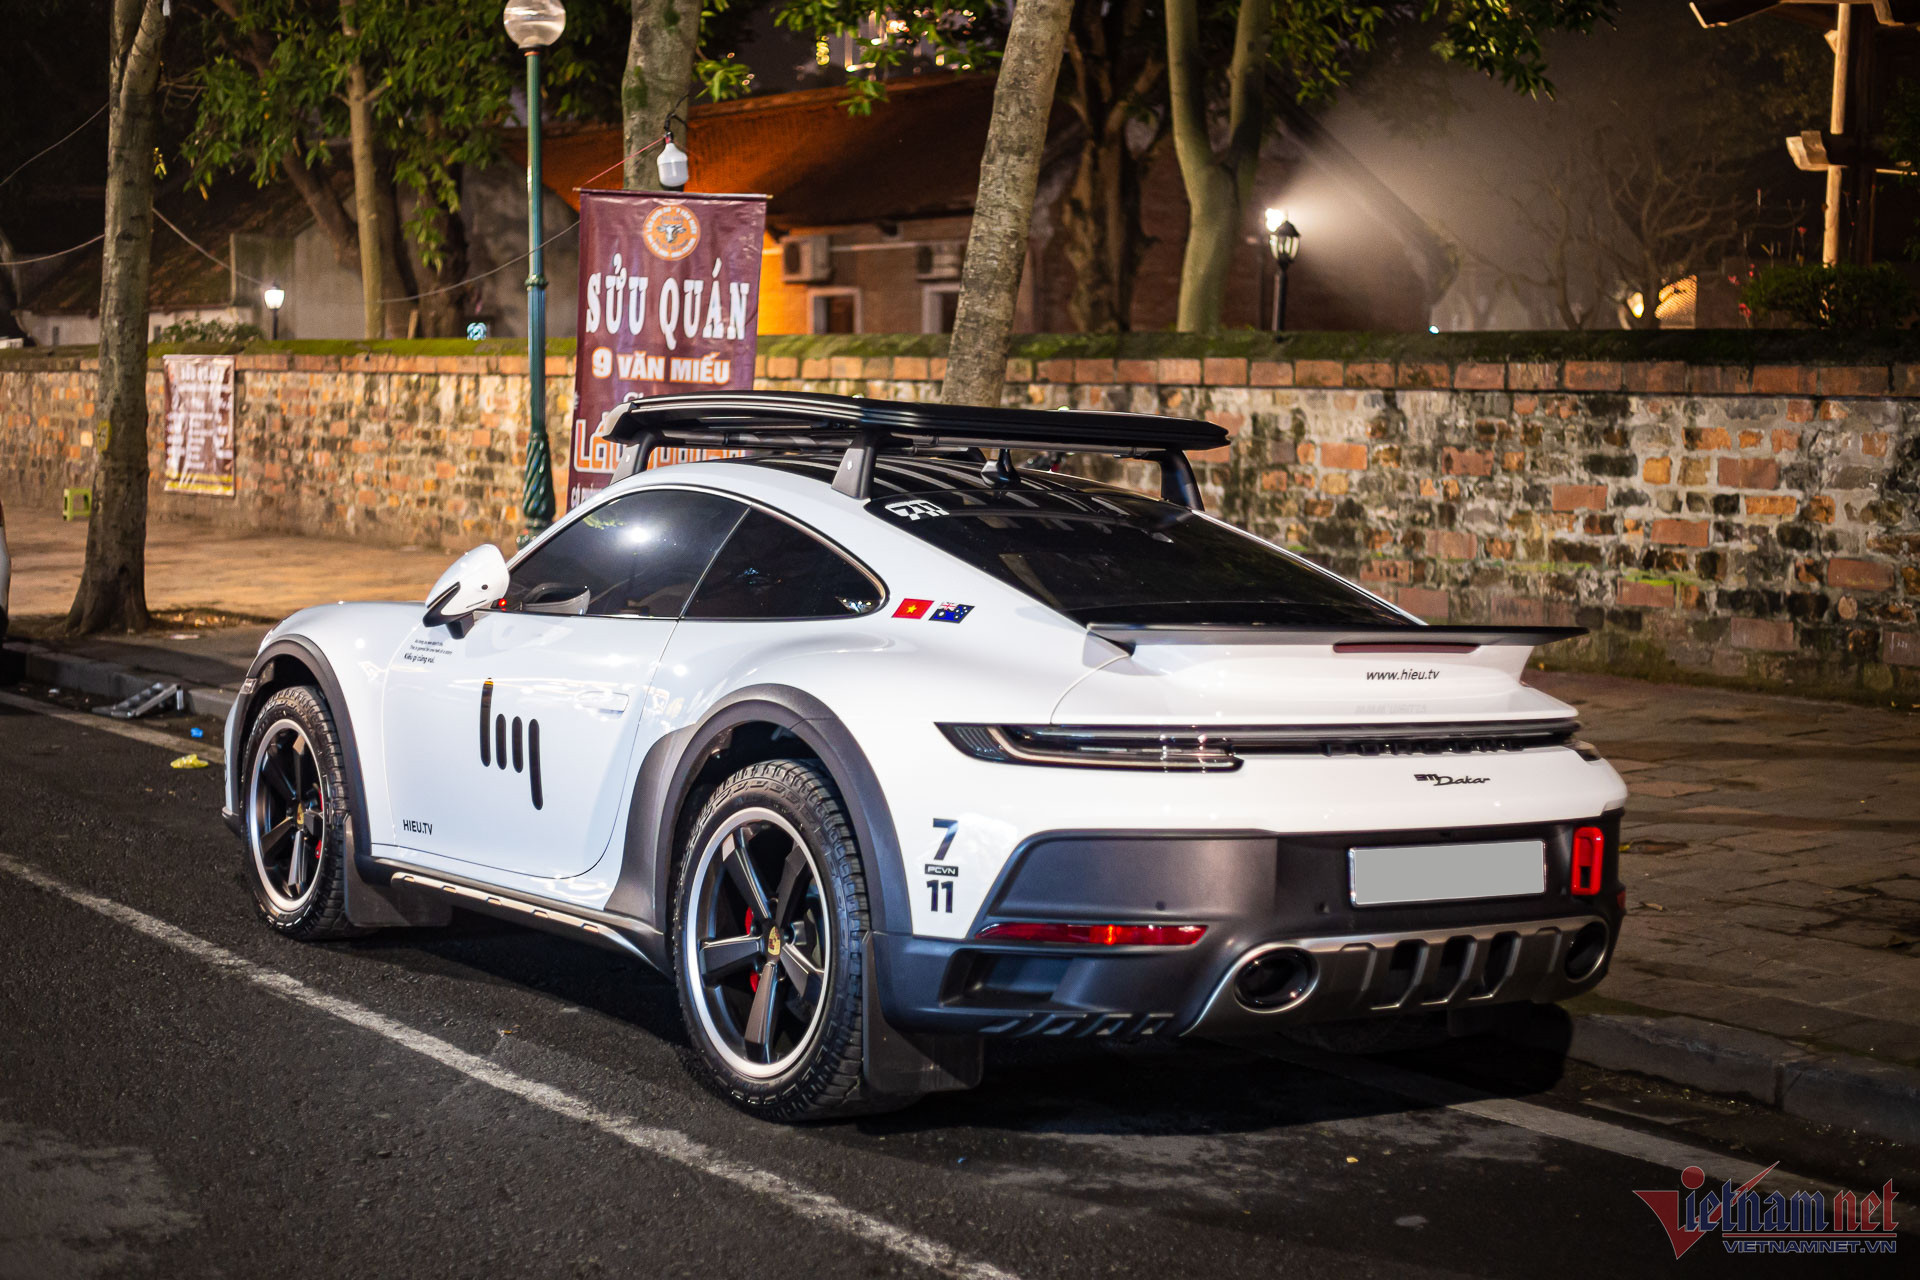 View - Giá xe Porsche 911 Dakar gần 16 tỷ vừa đi xuyên Việt gây sốt trong cộng đồng